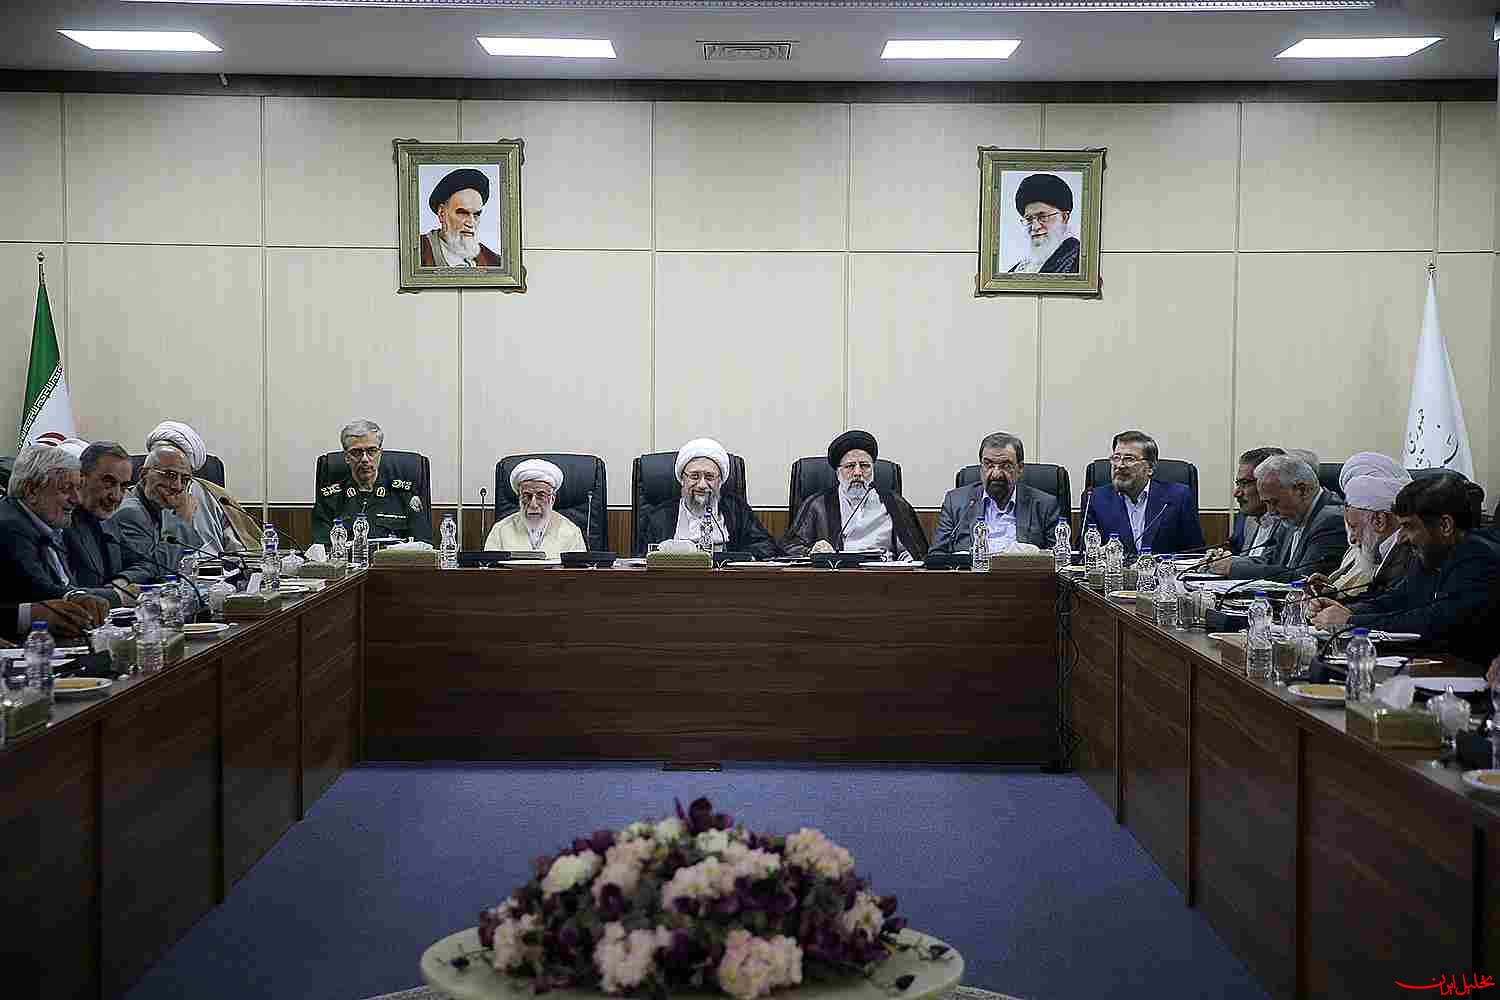  تحلیل ایران -پایان بررسی برنامه هفتم توسعه در هیأت عالی نظارت مجمع تشخیص مصلحت